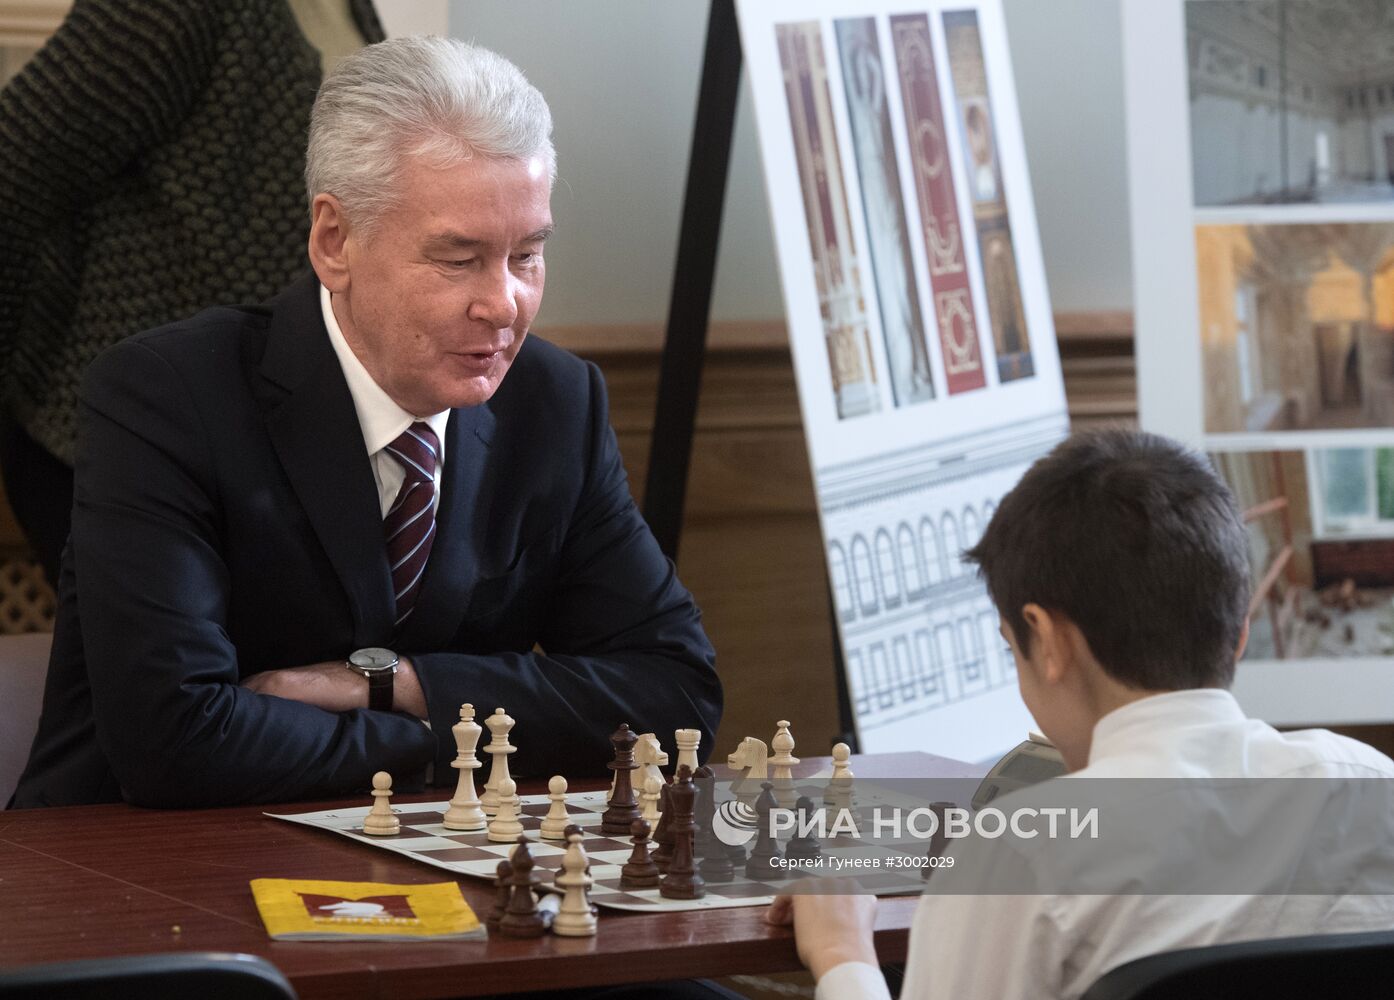 Открытие Центрального дома шахматиста на Гоголевском бульваре в Москве